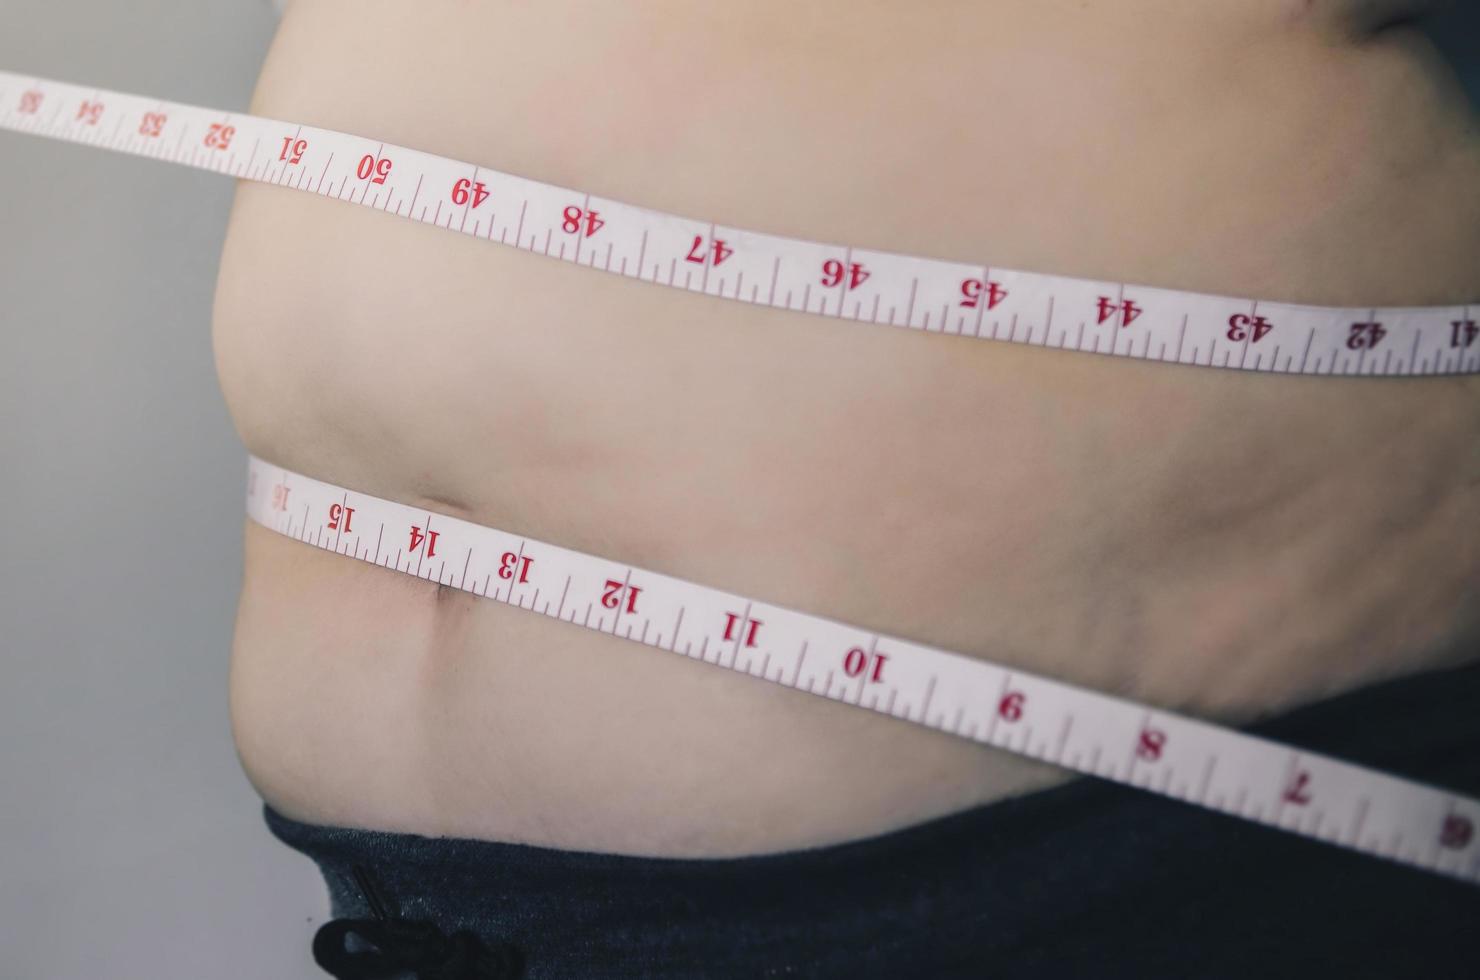 corpo humano e corpo gordo, pança ou barriga e excesso de peso das pessoas. foto